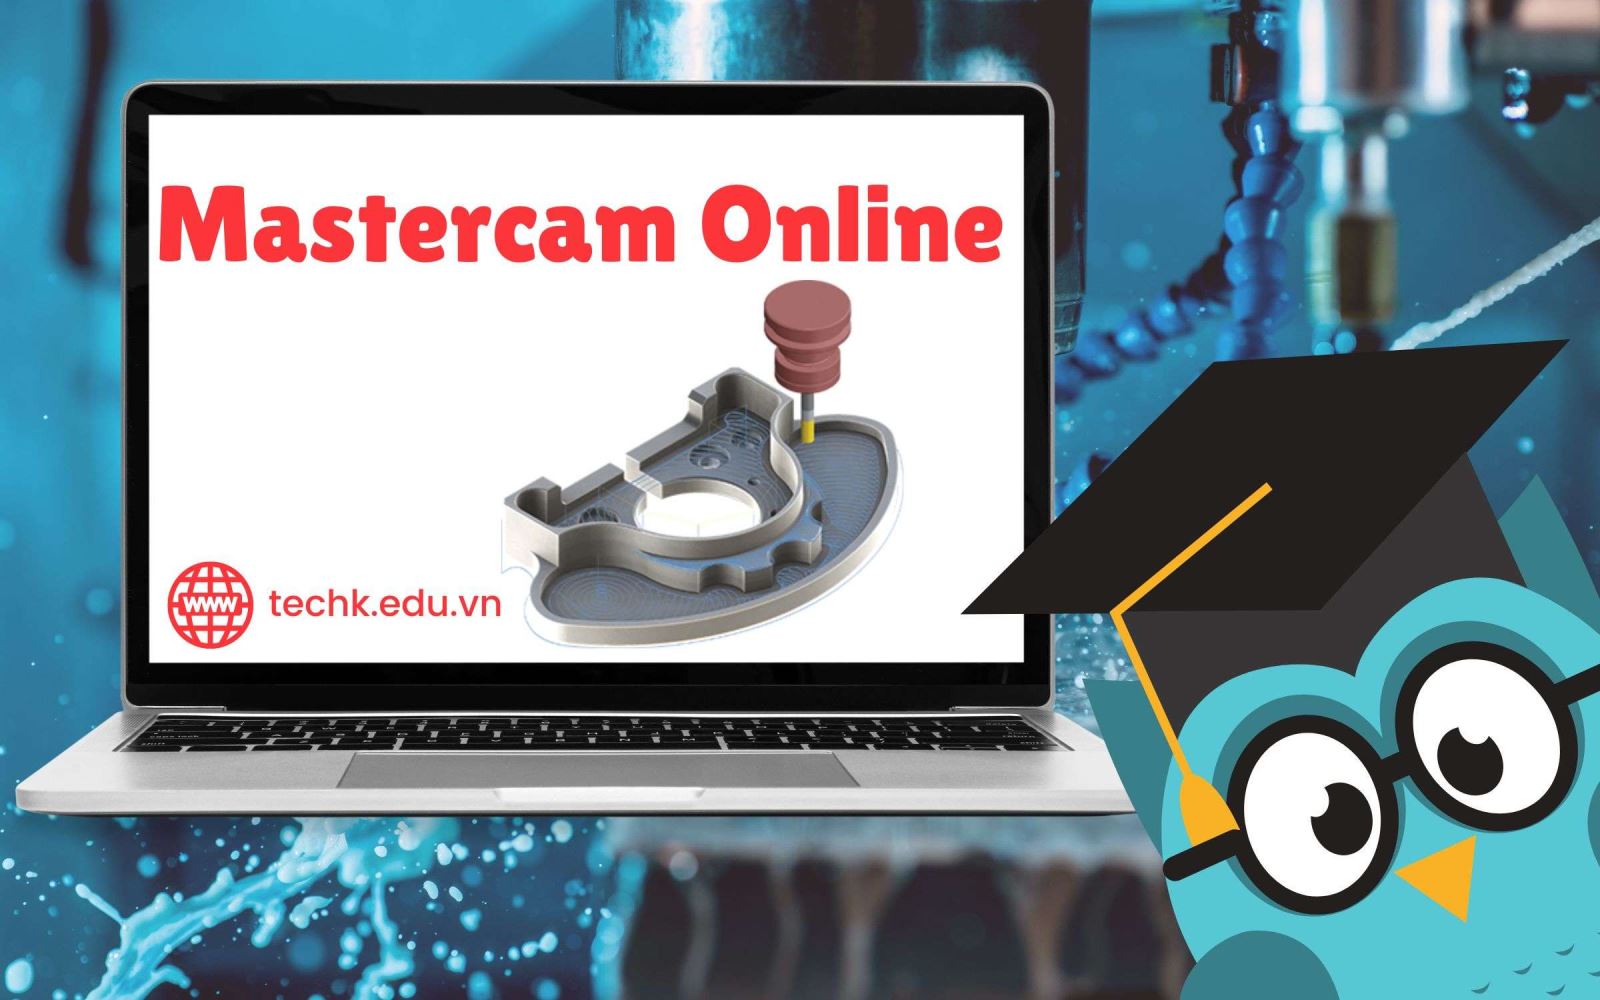 Lợi ích khi tham gia khóa học Mastercam online